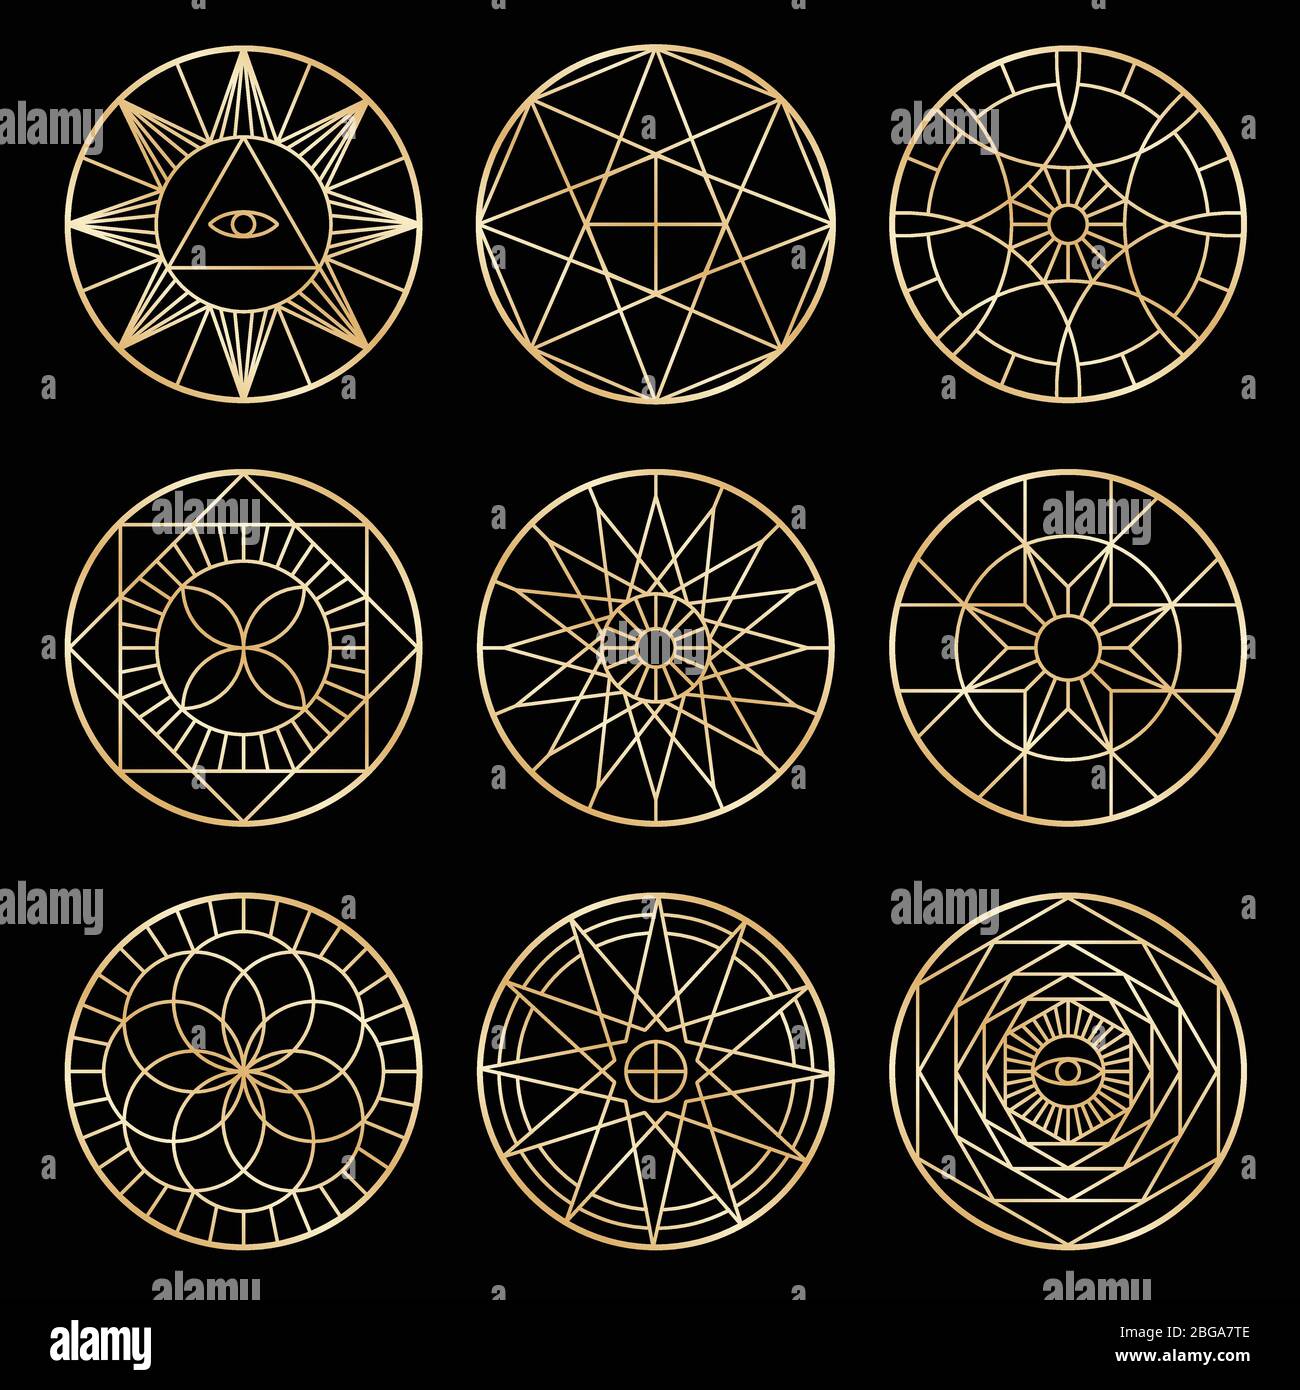 Pentagrammes géométriques ésotériques. Symboles spirituels sacrés mystiques vectoriels. Illustration du style géométrique sacré du pentagramme ésotérique Illustration de Vecteur